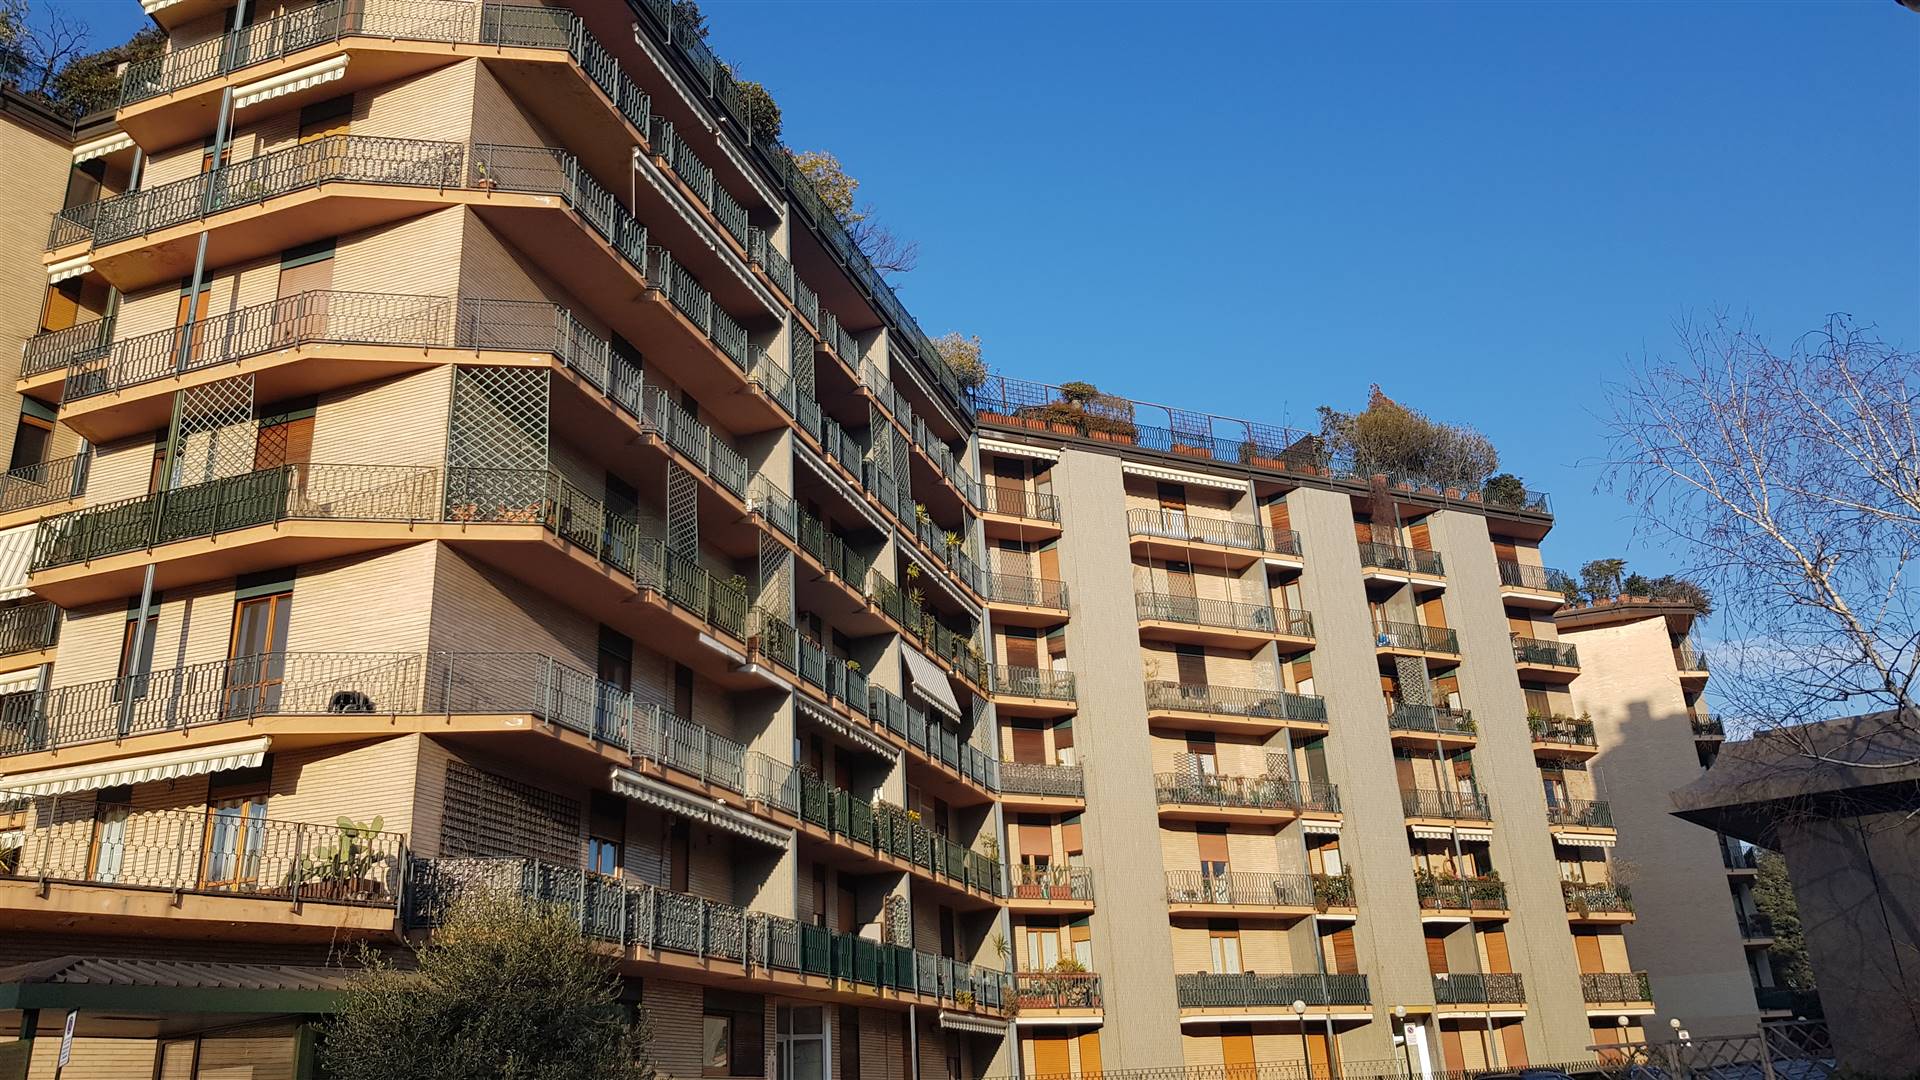 Appartamento in affitto a Monza, 2 locali, zona Località: OSPEDALE NUOVO, prezzo € 750 | PortaleAgenzieImmobiliari.it